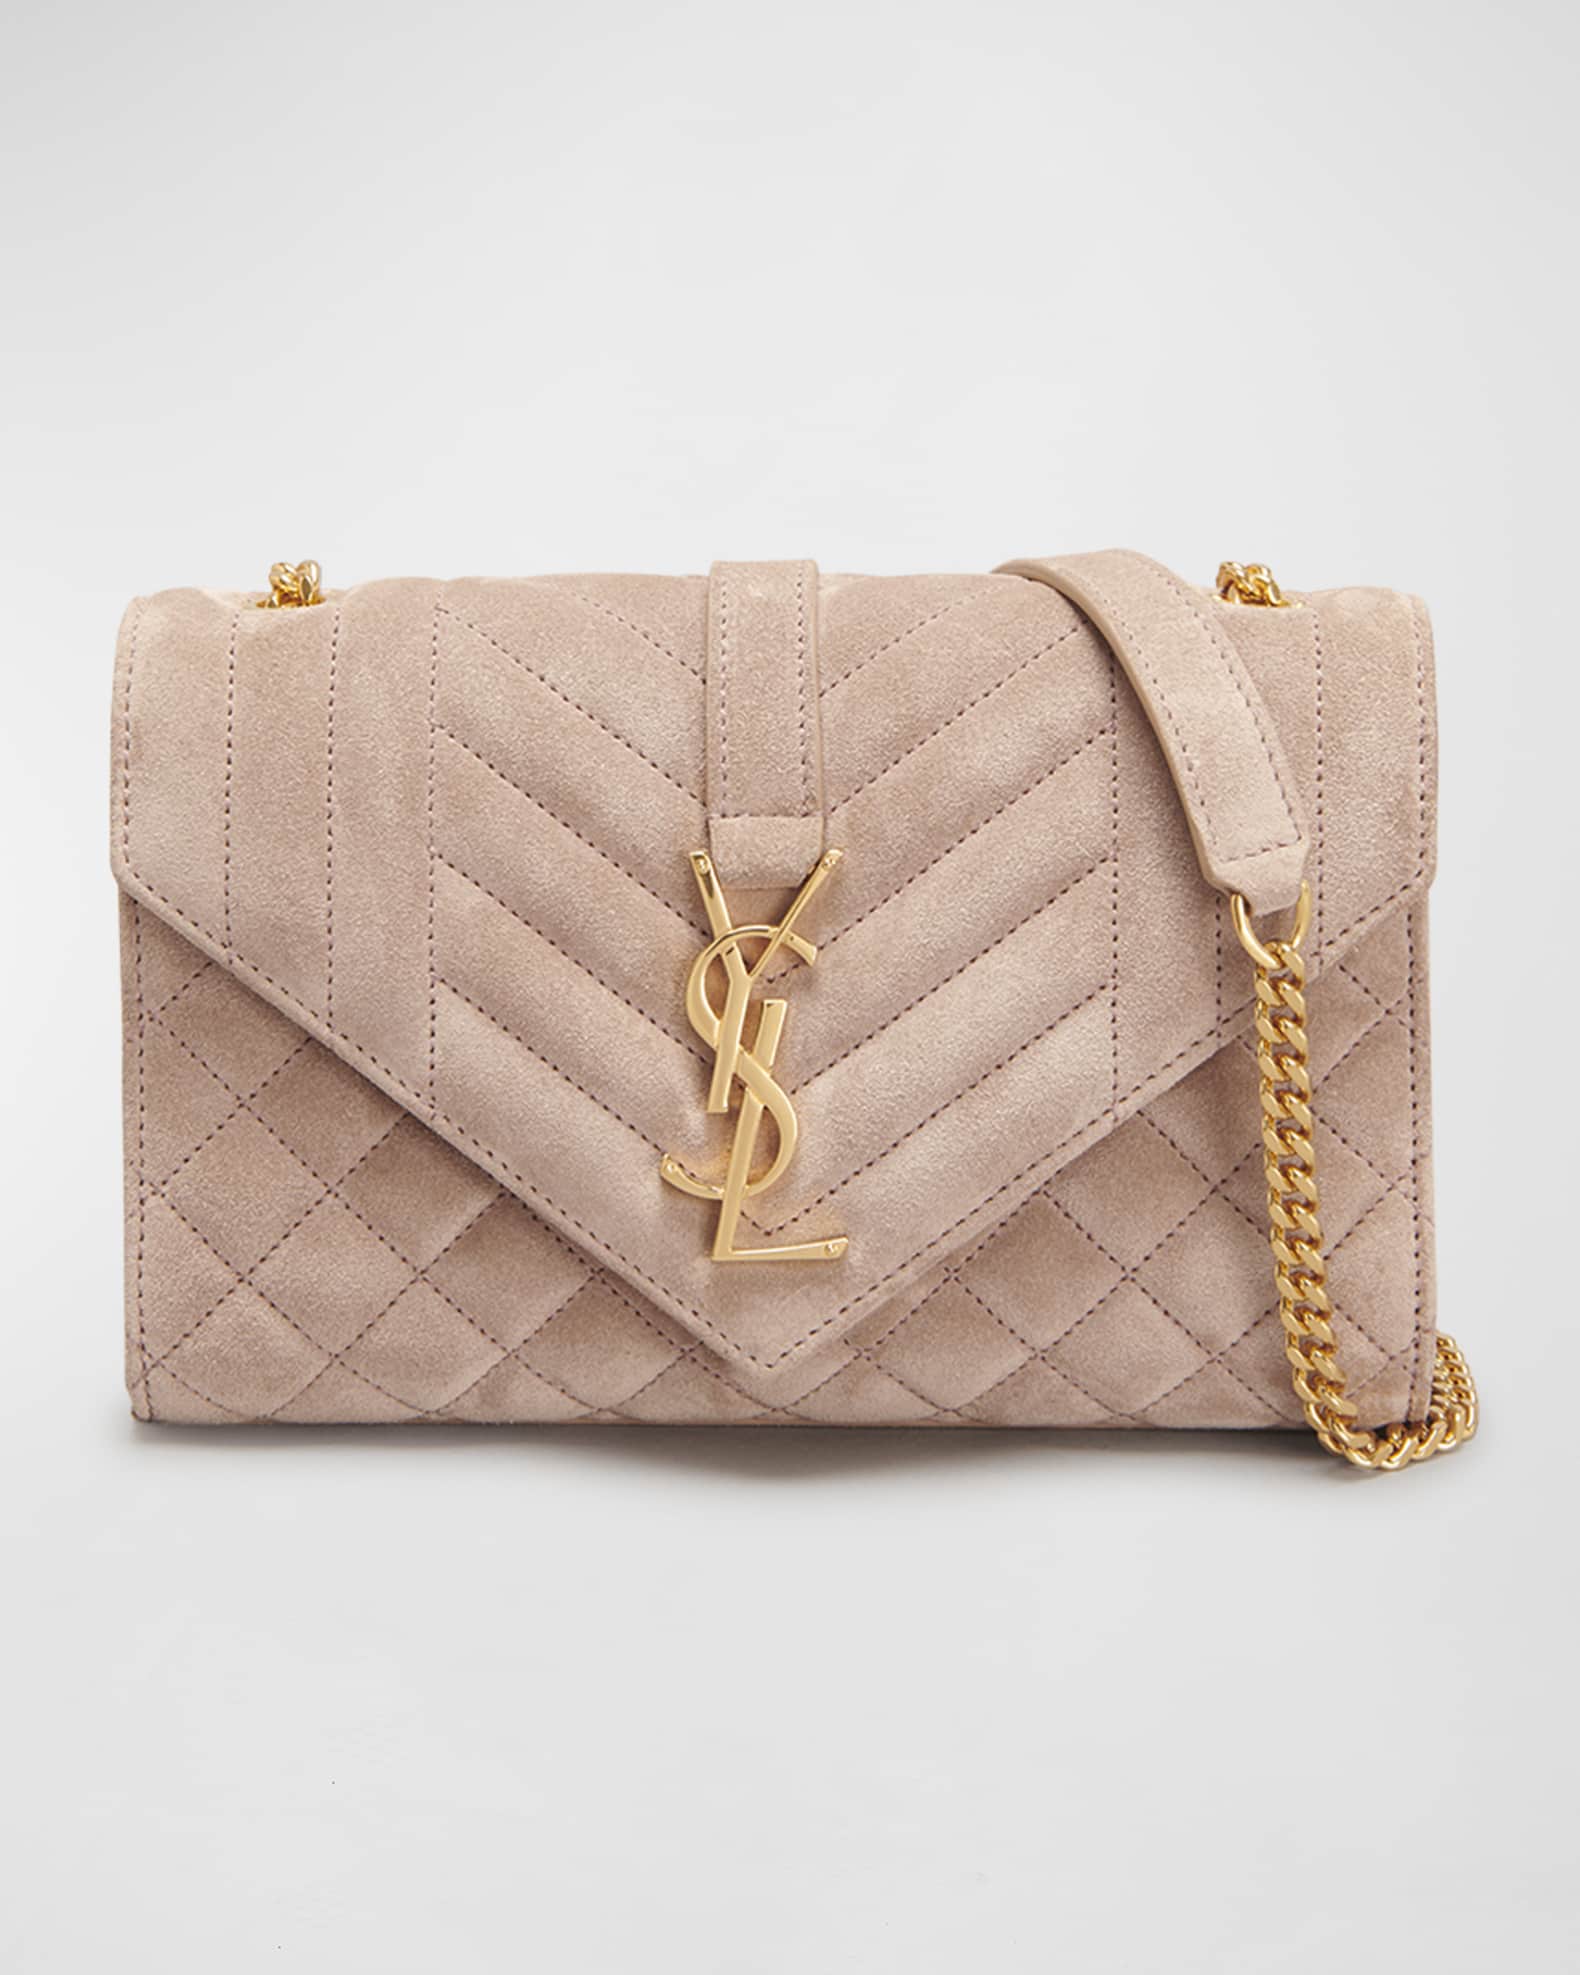 Saint Laurent Medium Tri-quilt Leather Envelope Bag in Pink